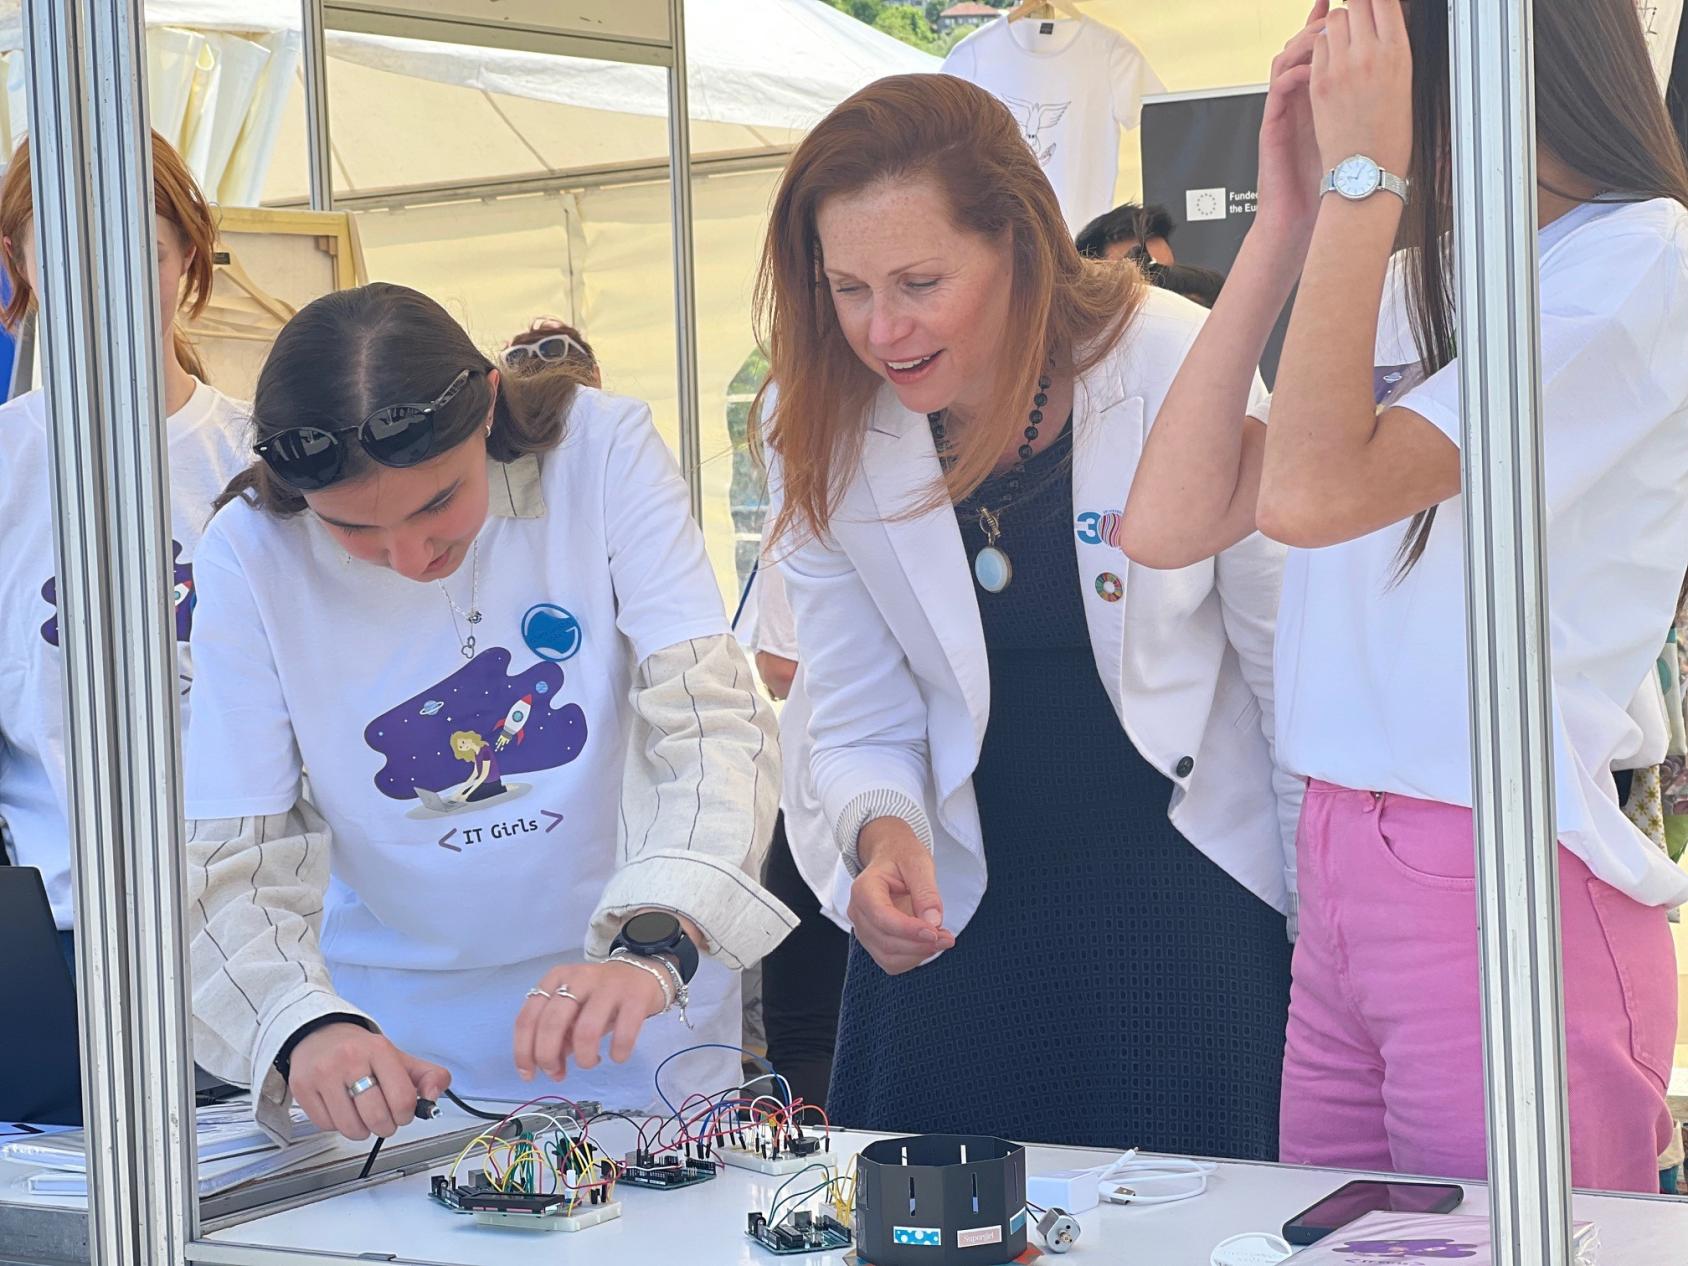 联合国波黑驻地协调员英格丽-麦克唐纳在萨拉热窝的#ImagineChange节上与“IT女孩”倡议的参与者。